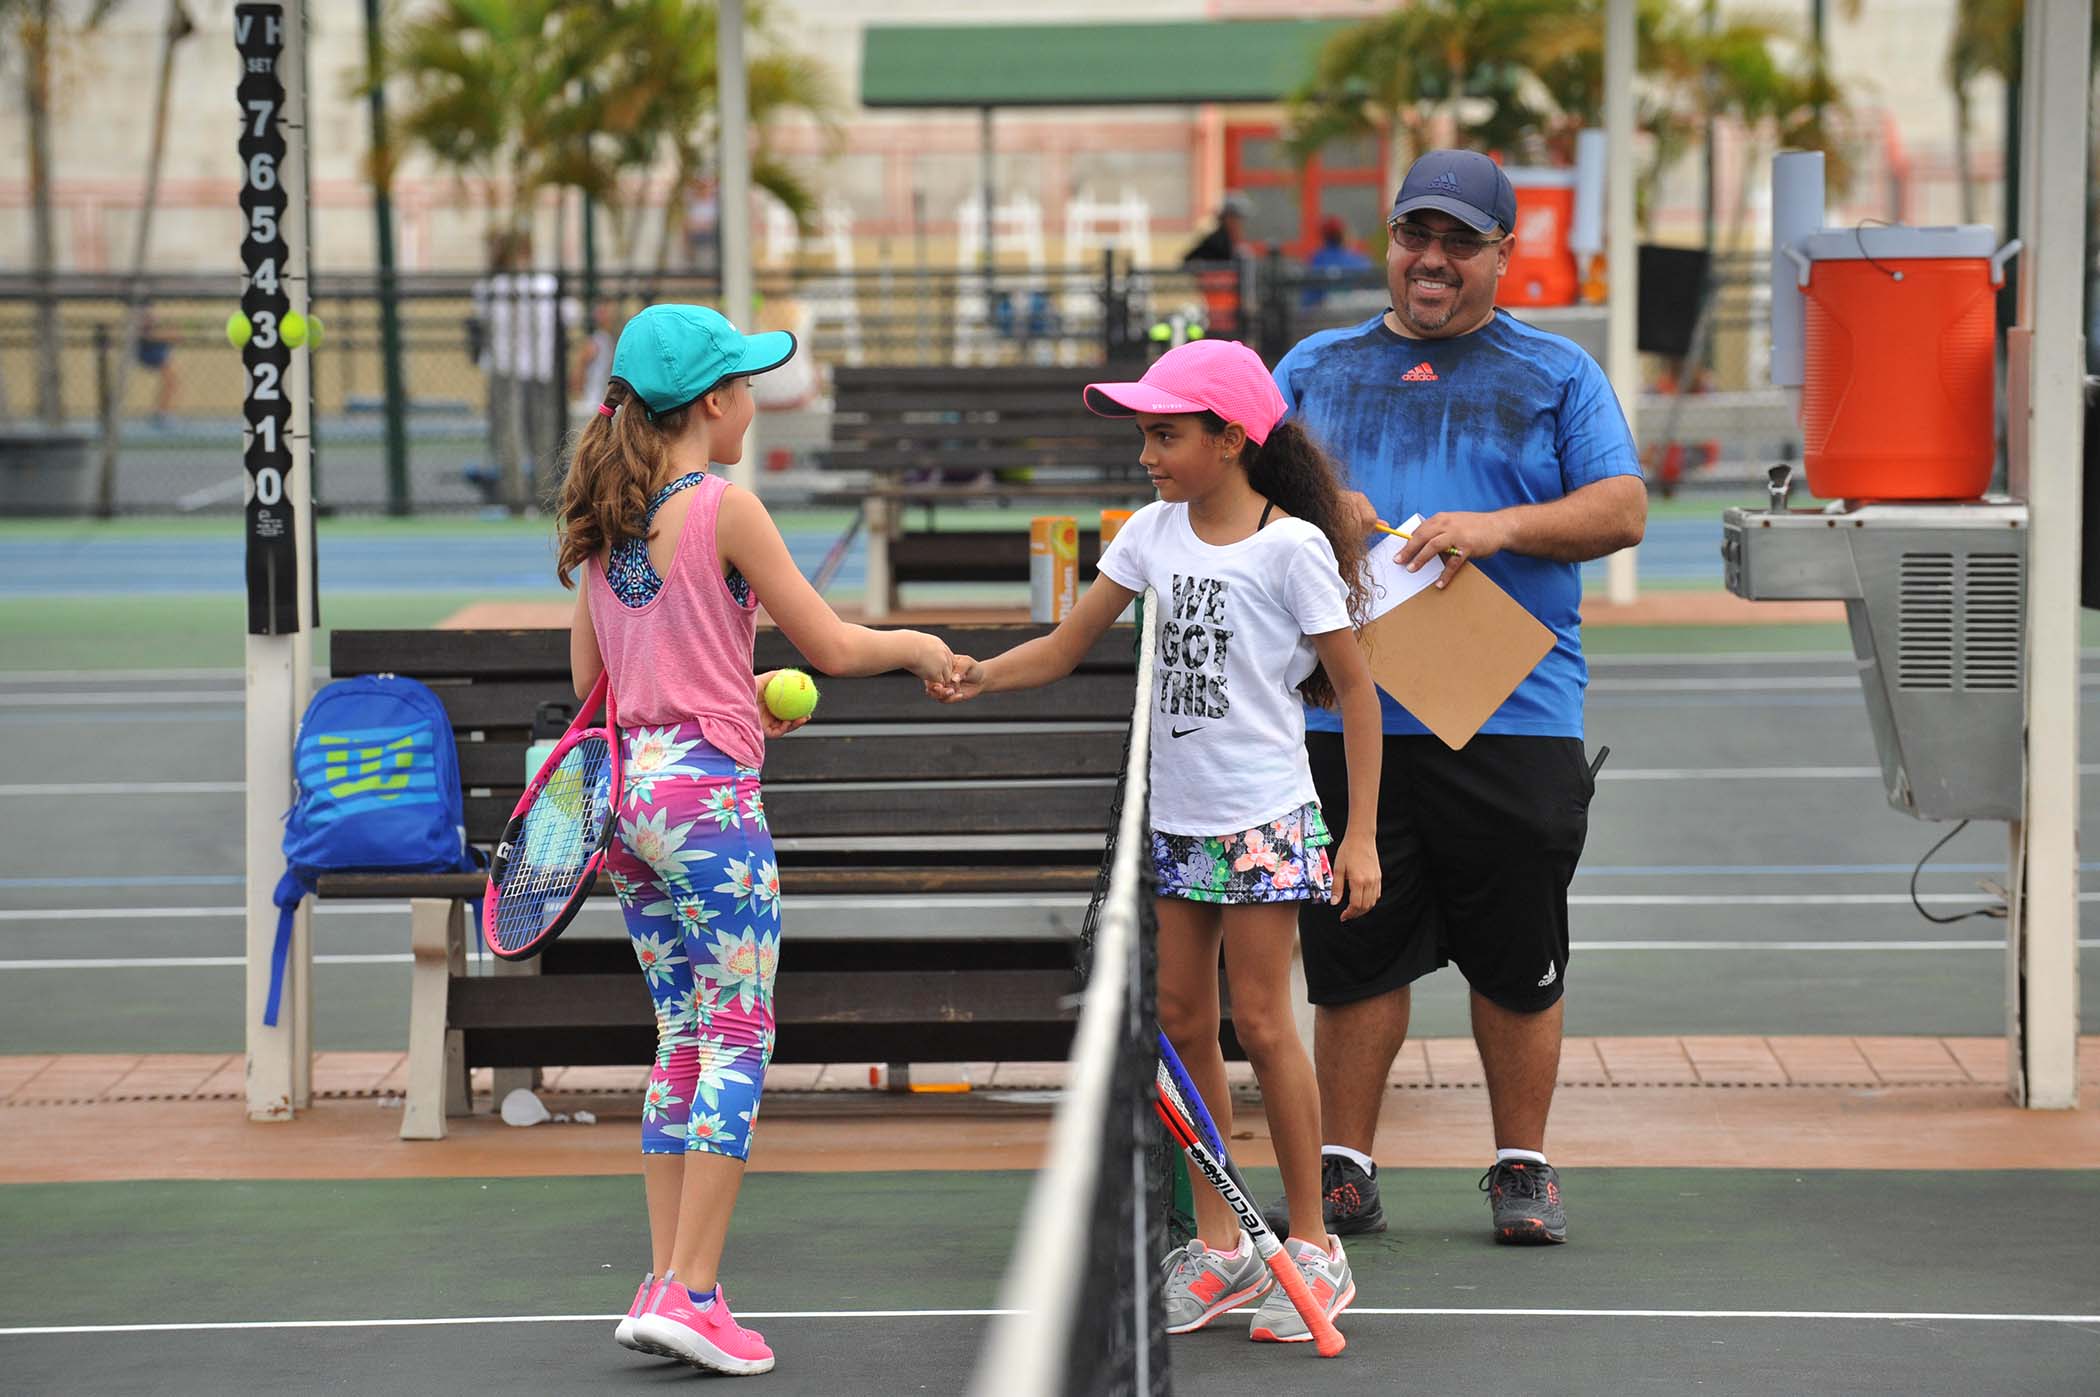 Torneo Desarrollo Juvenil de Tenis en el Centro de Tenis Honda